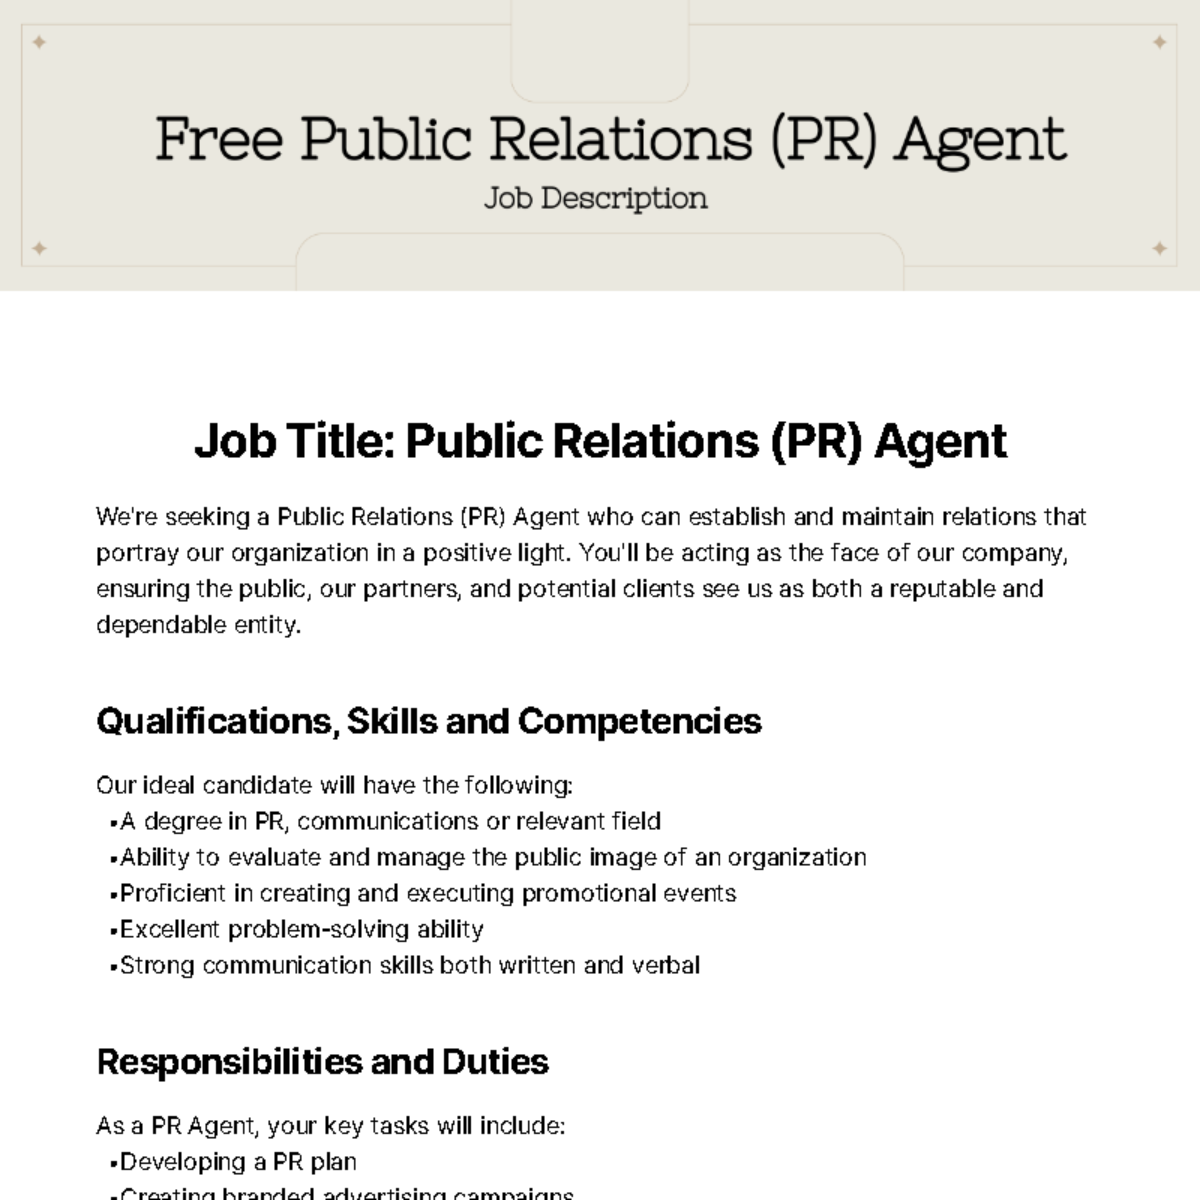 Public Relations (PR) Agent Job Description Template